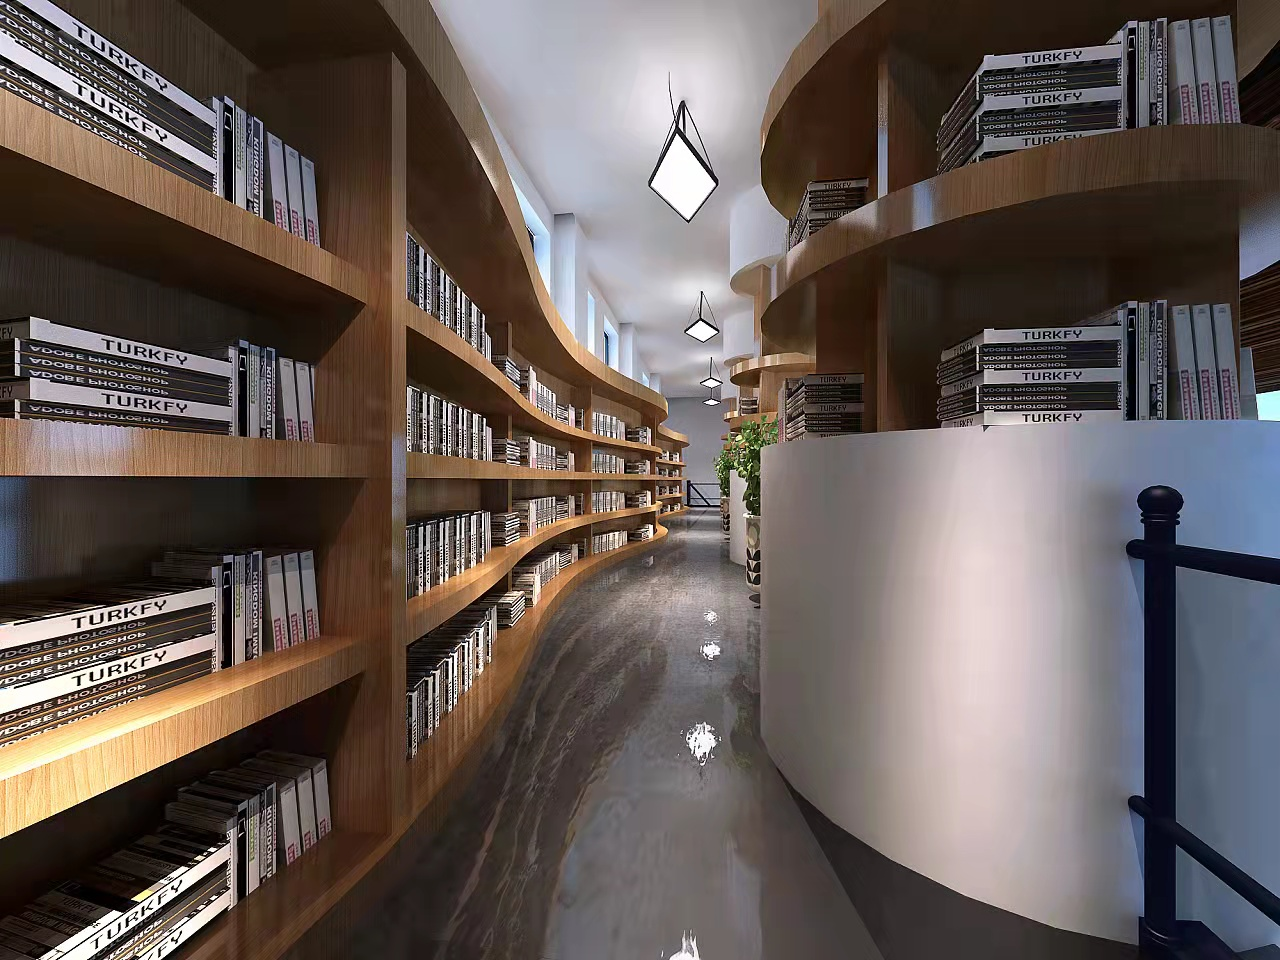 Thiết kế chiếu sáng thư viện, lĩnh vực trọng điểm của chiếu sáng trường học!